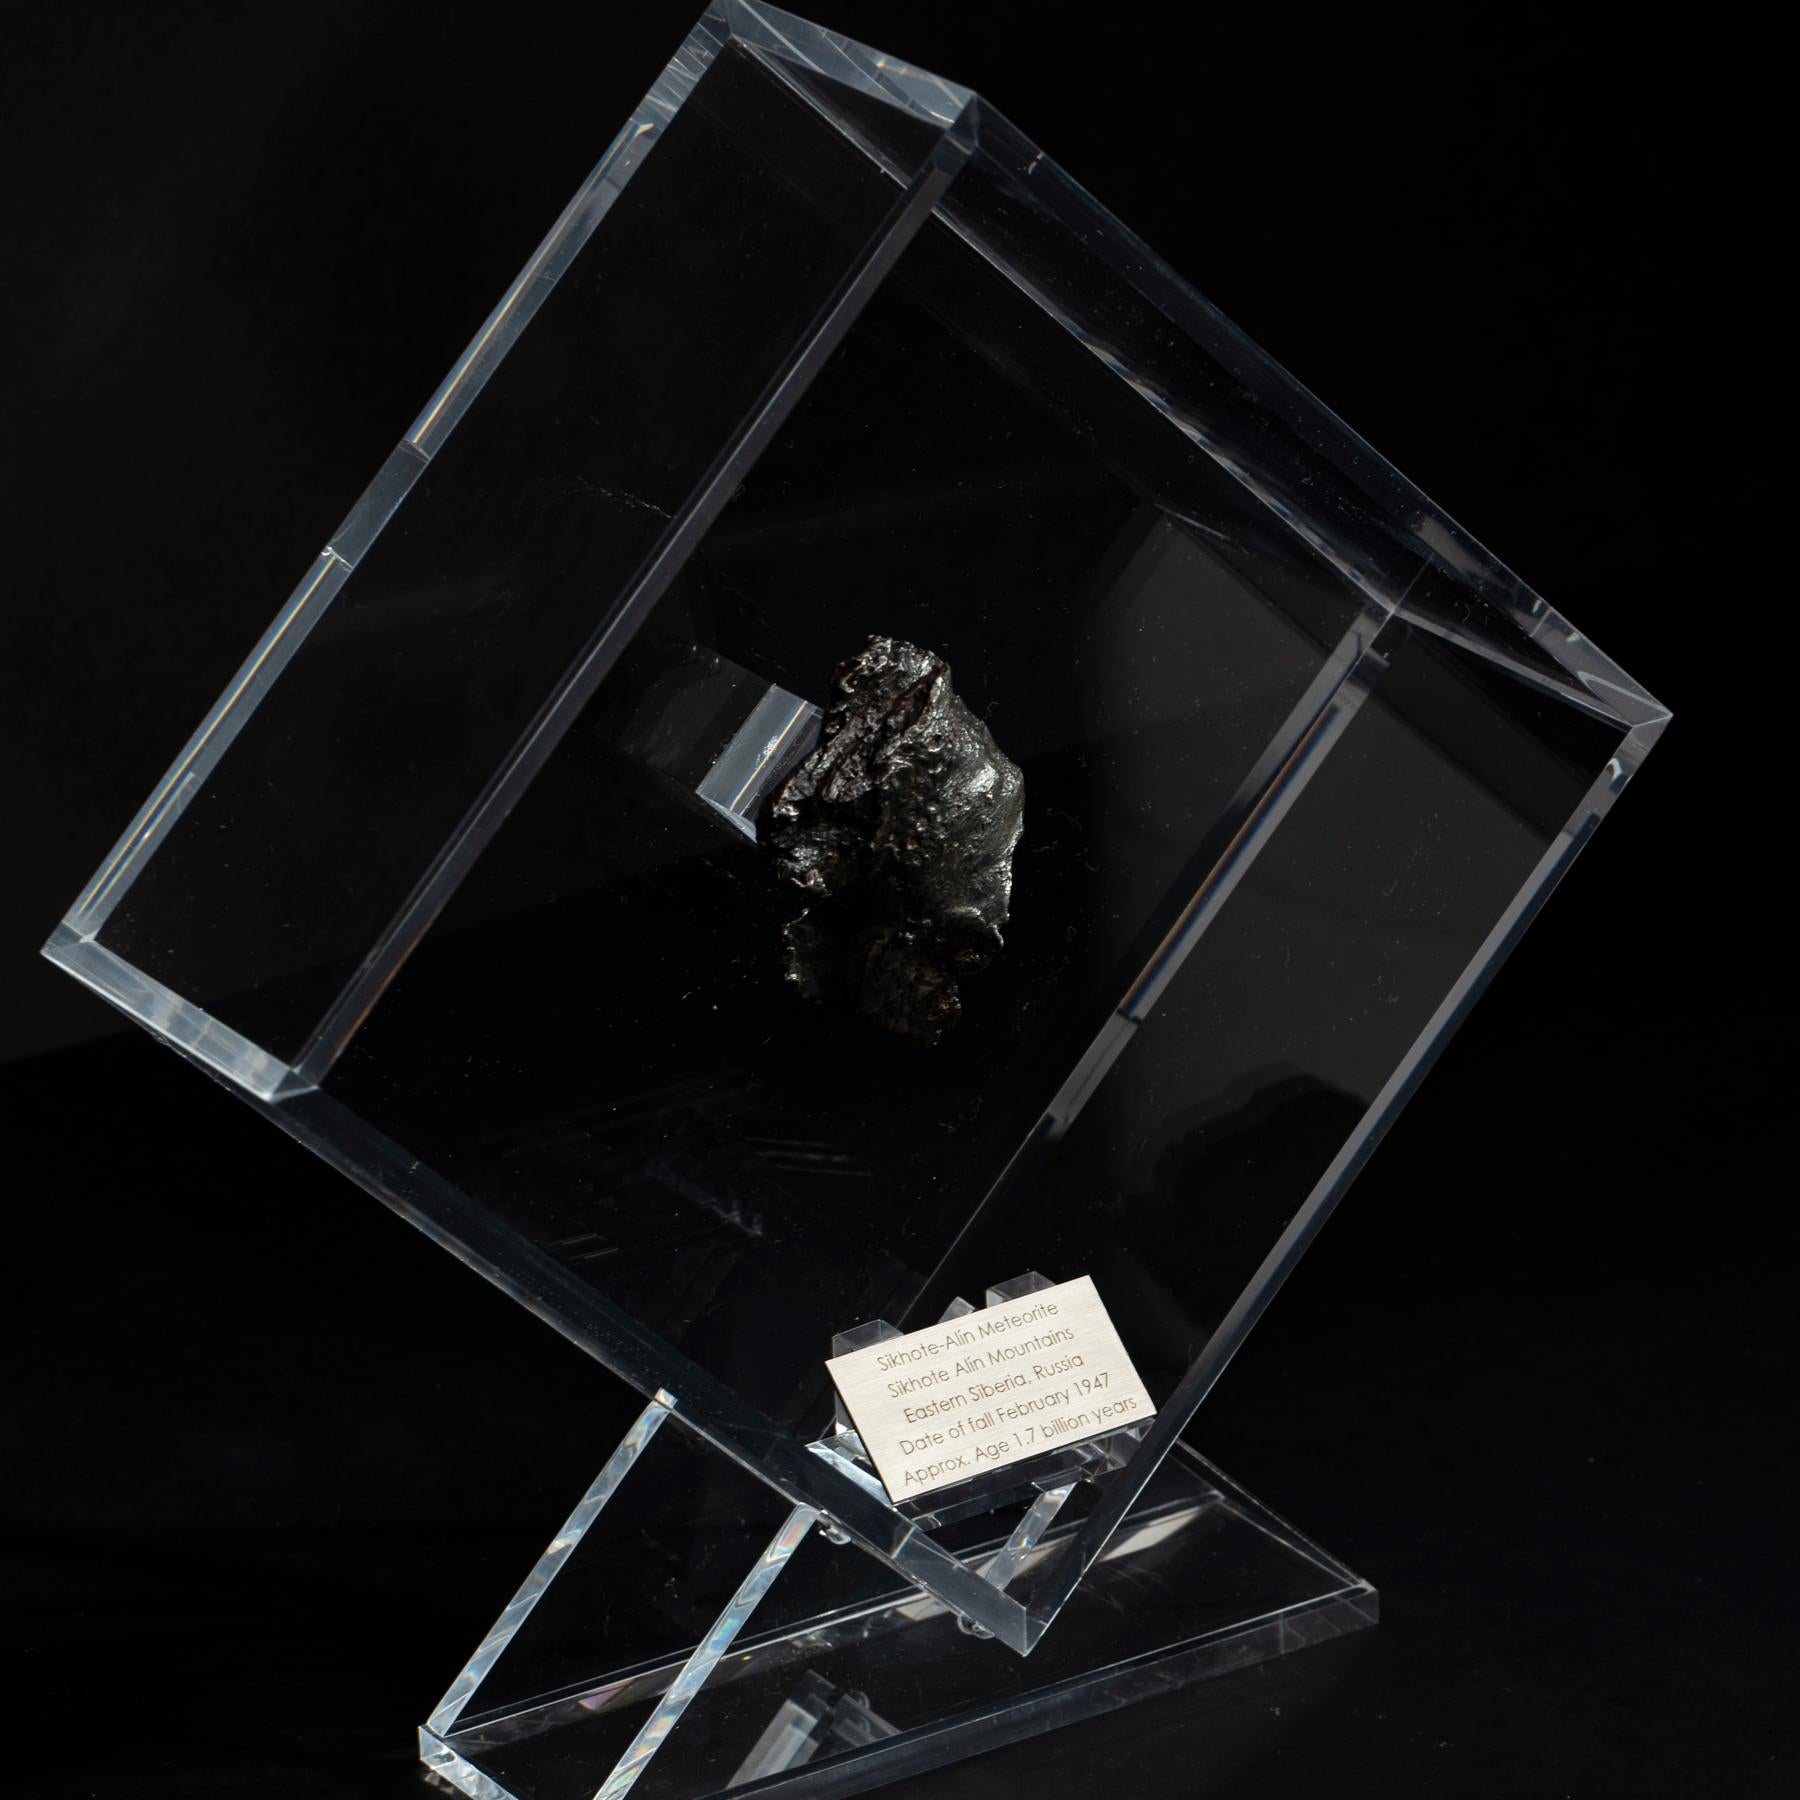 XXIe siècle et contemporain Sikhote Alin Meteorite de Sibérie, Russie, exposé sur mesure en acrylique en vente